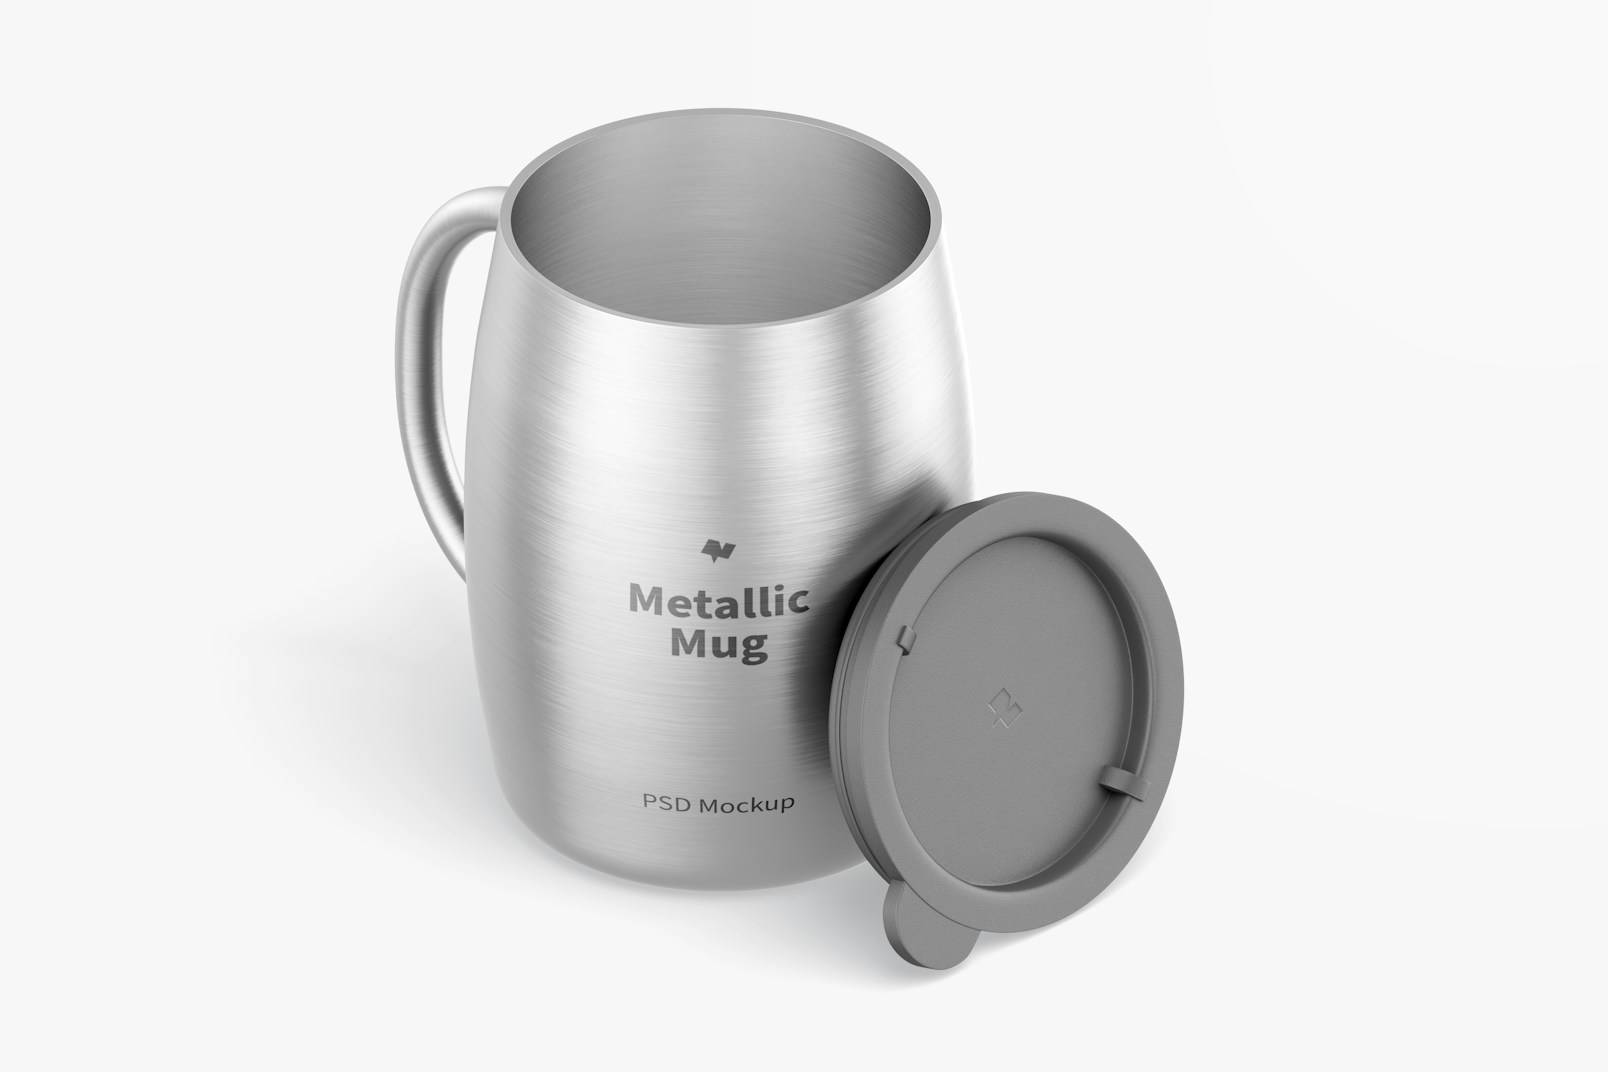 Metallic Mug with Lid Mockup, Isometric Opened View